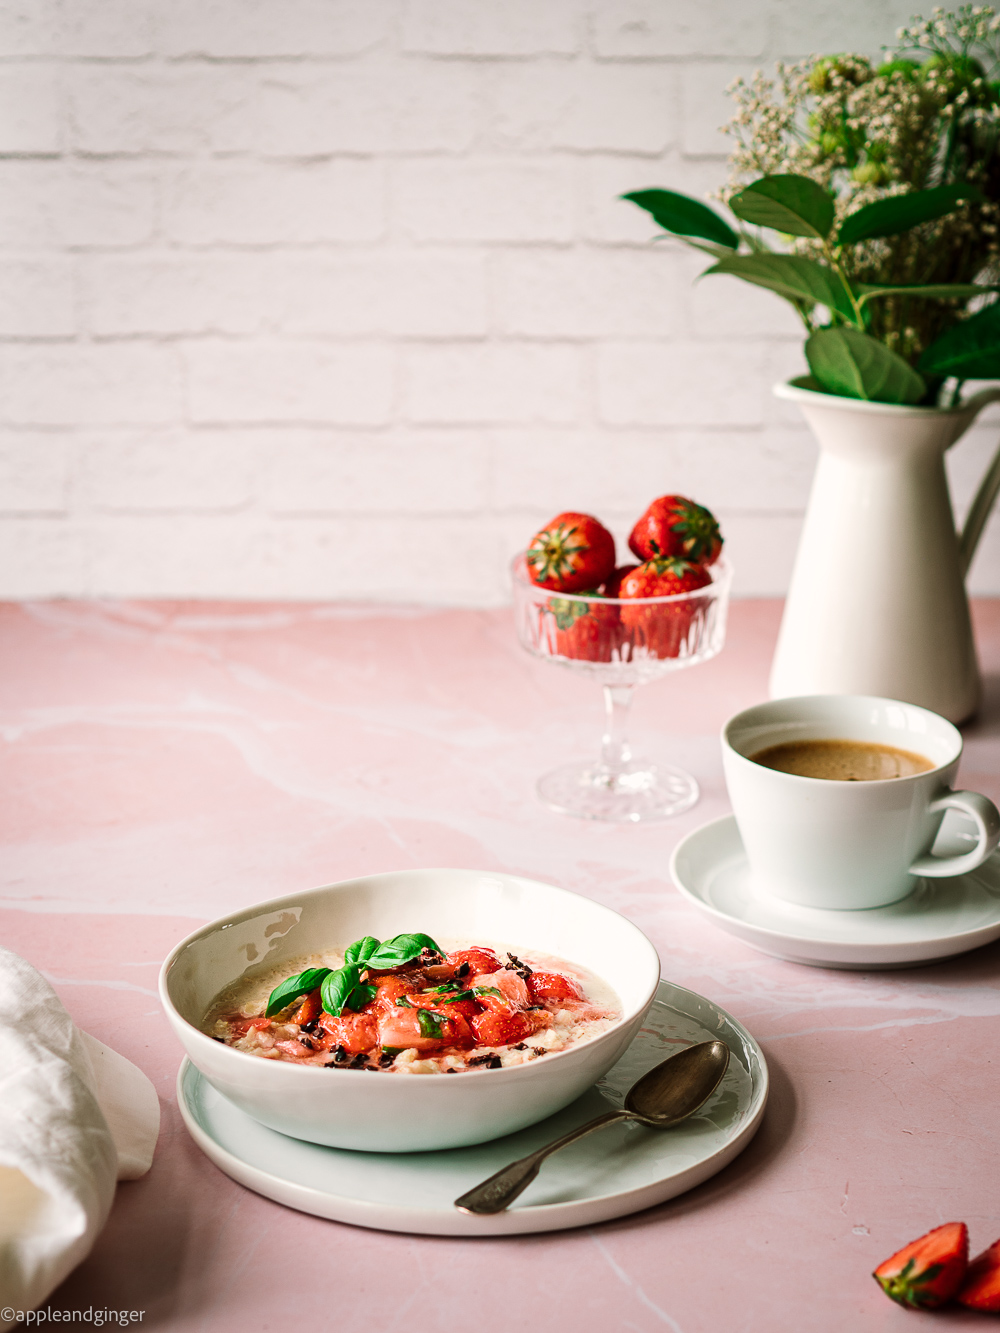 Milchreis mit Erdbeerlompott auf einem rosa Marmor Untergrund mit Kaffeetasse